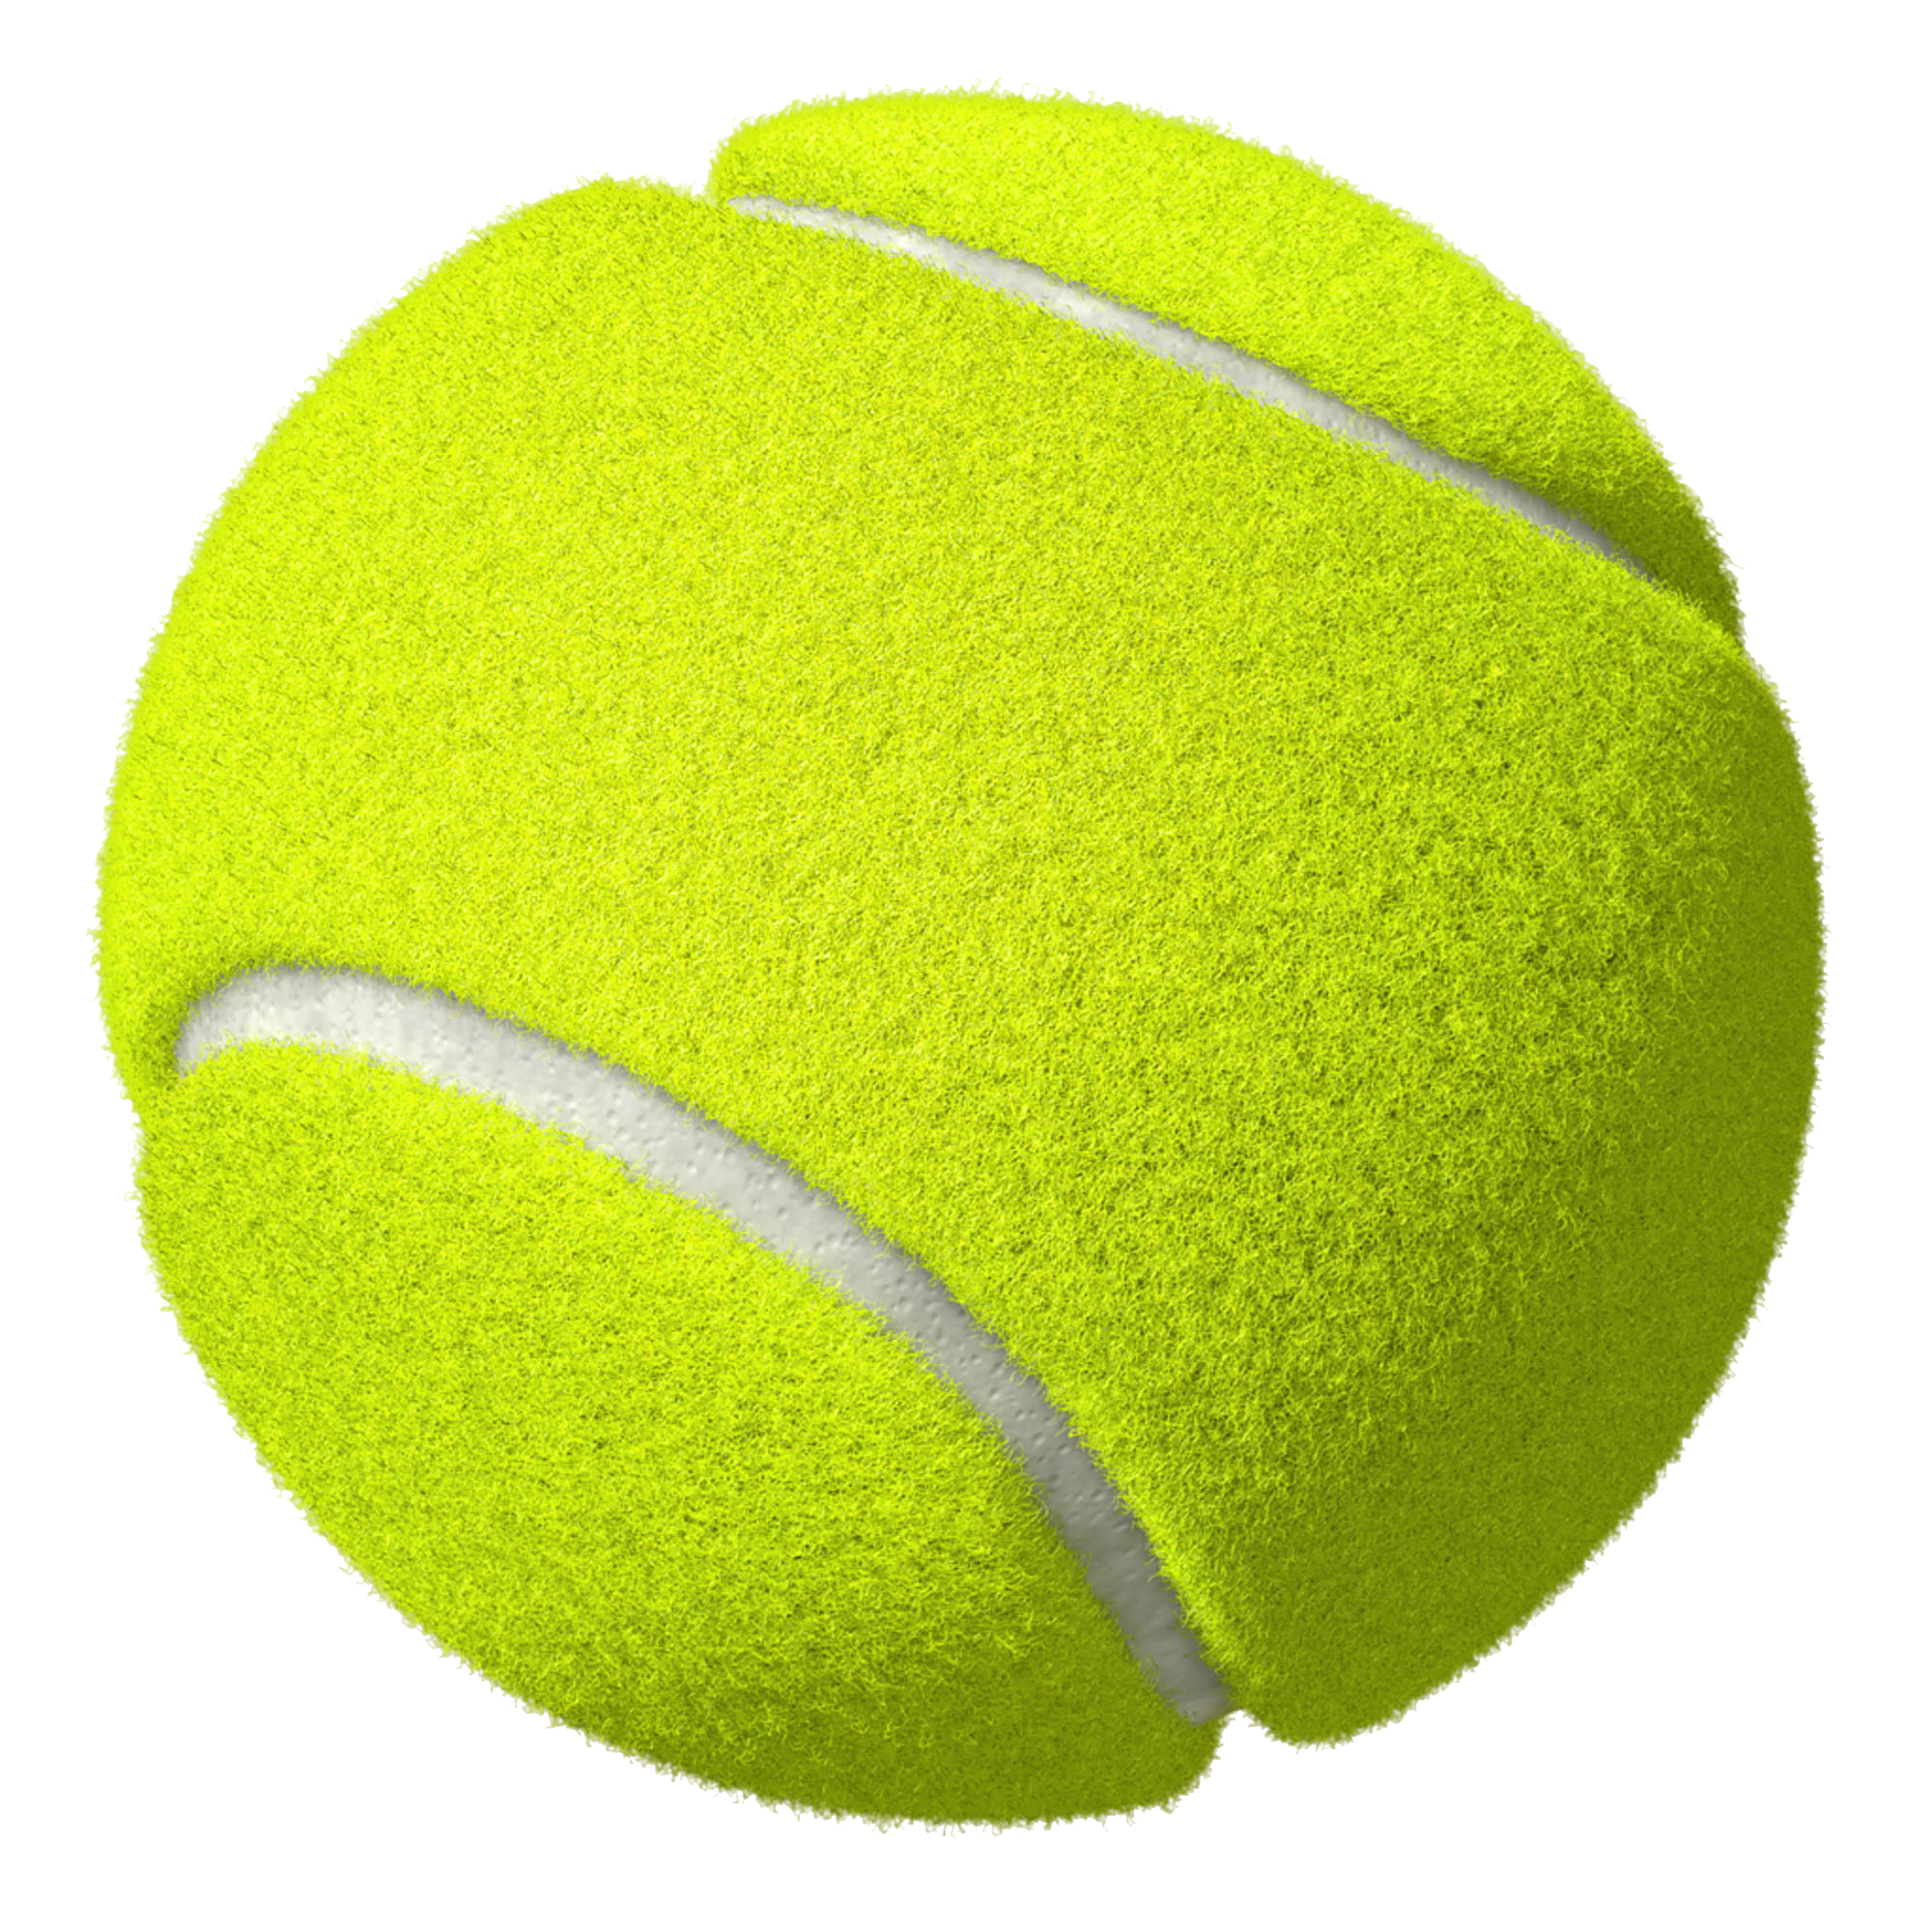 Similar Tennis PNG Image